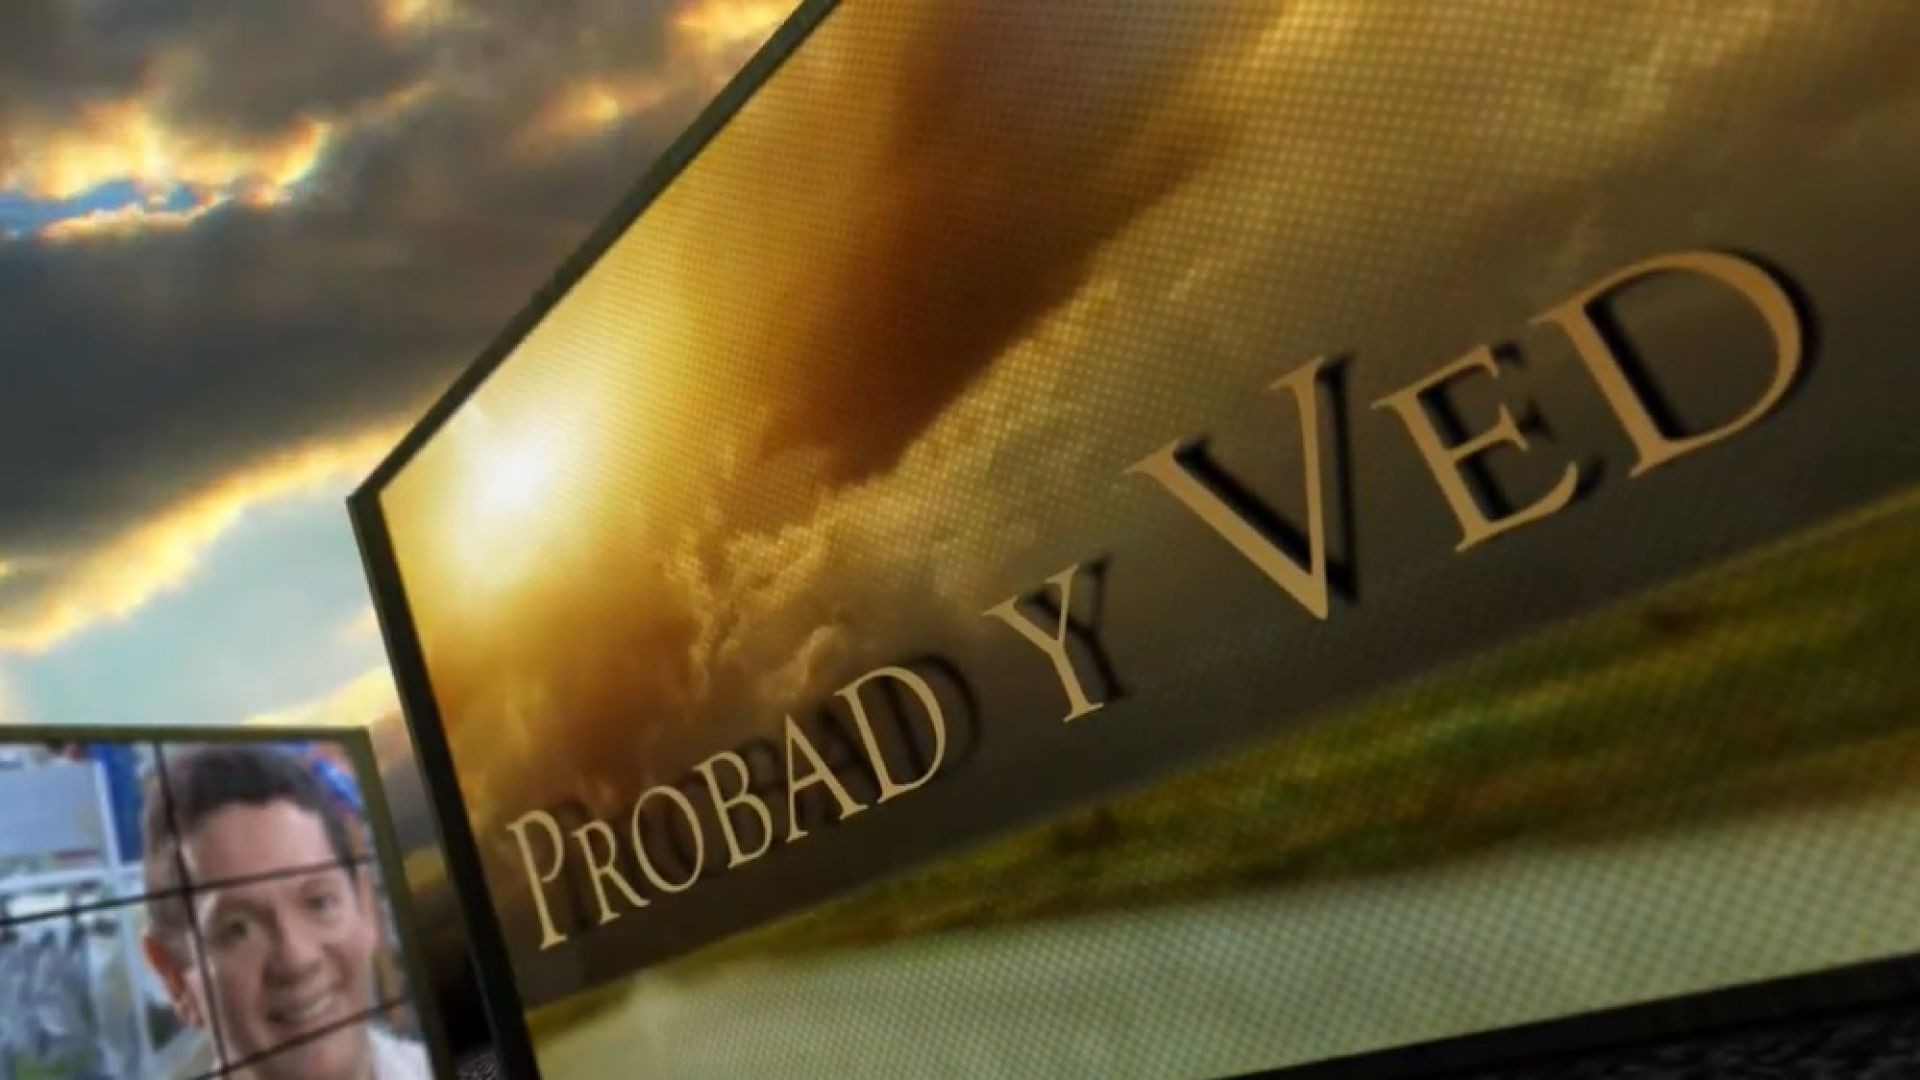 Probad y Ved 2013 - Compromiso con Dios - 27Jul